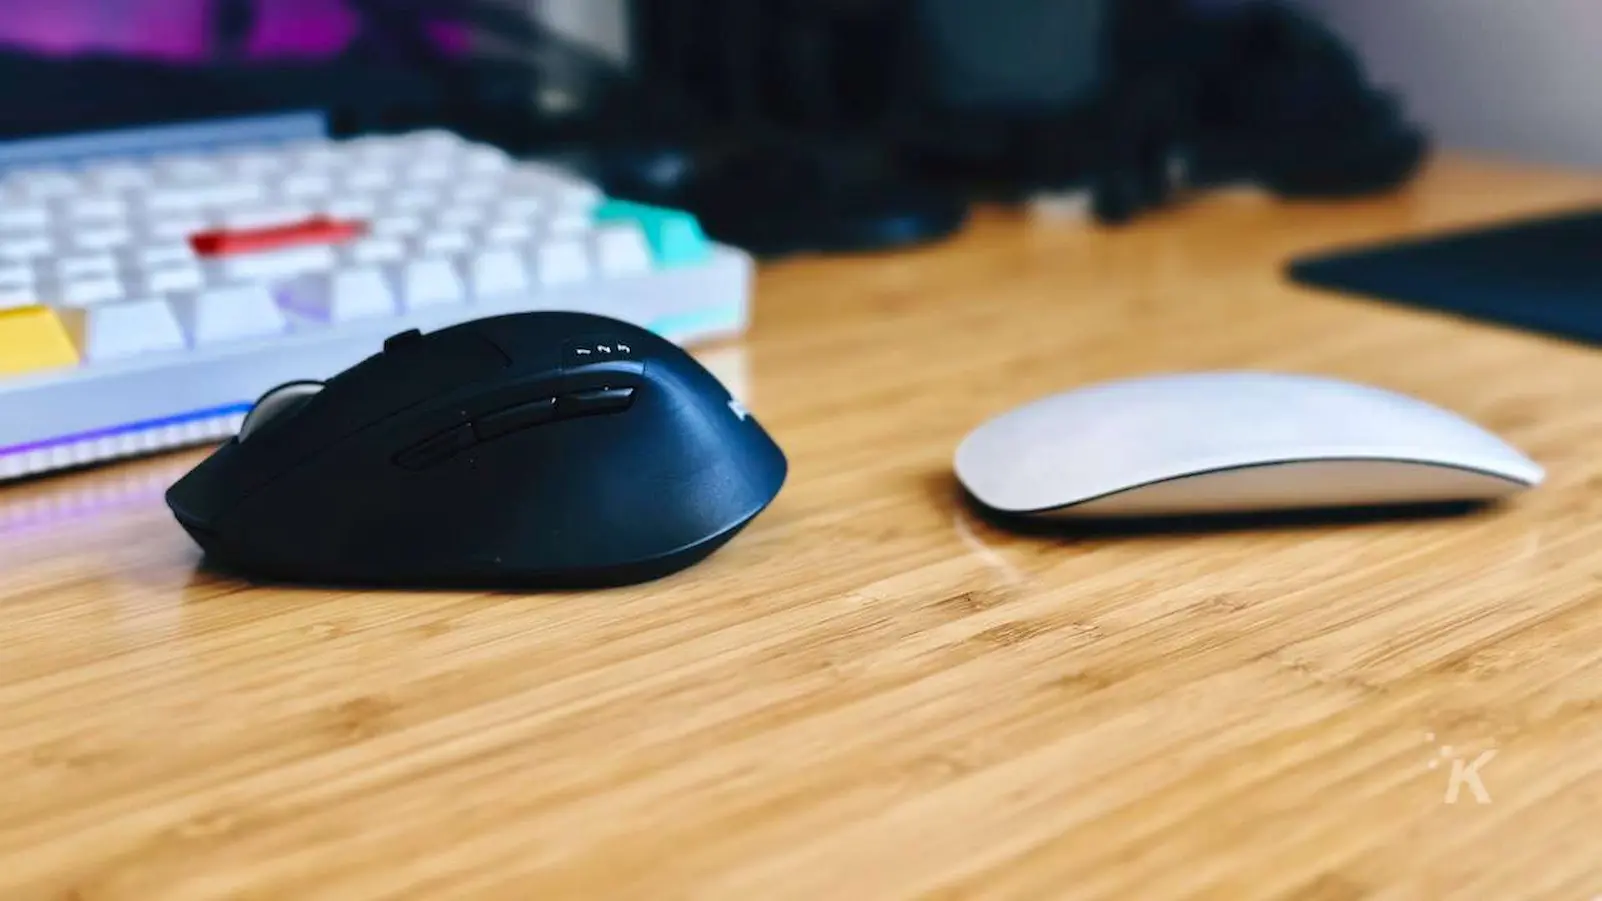 рядом изображение мыши Apple Magic Mouse и мыши Logitech M720 на офисном столе